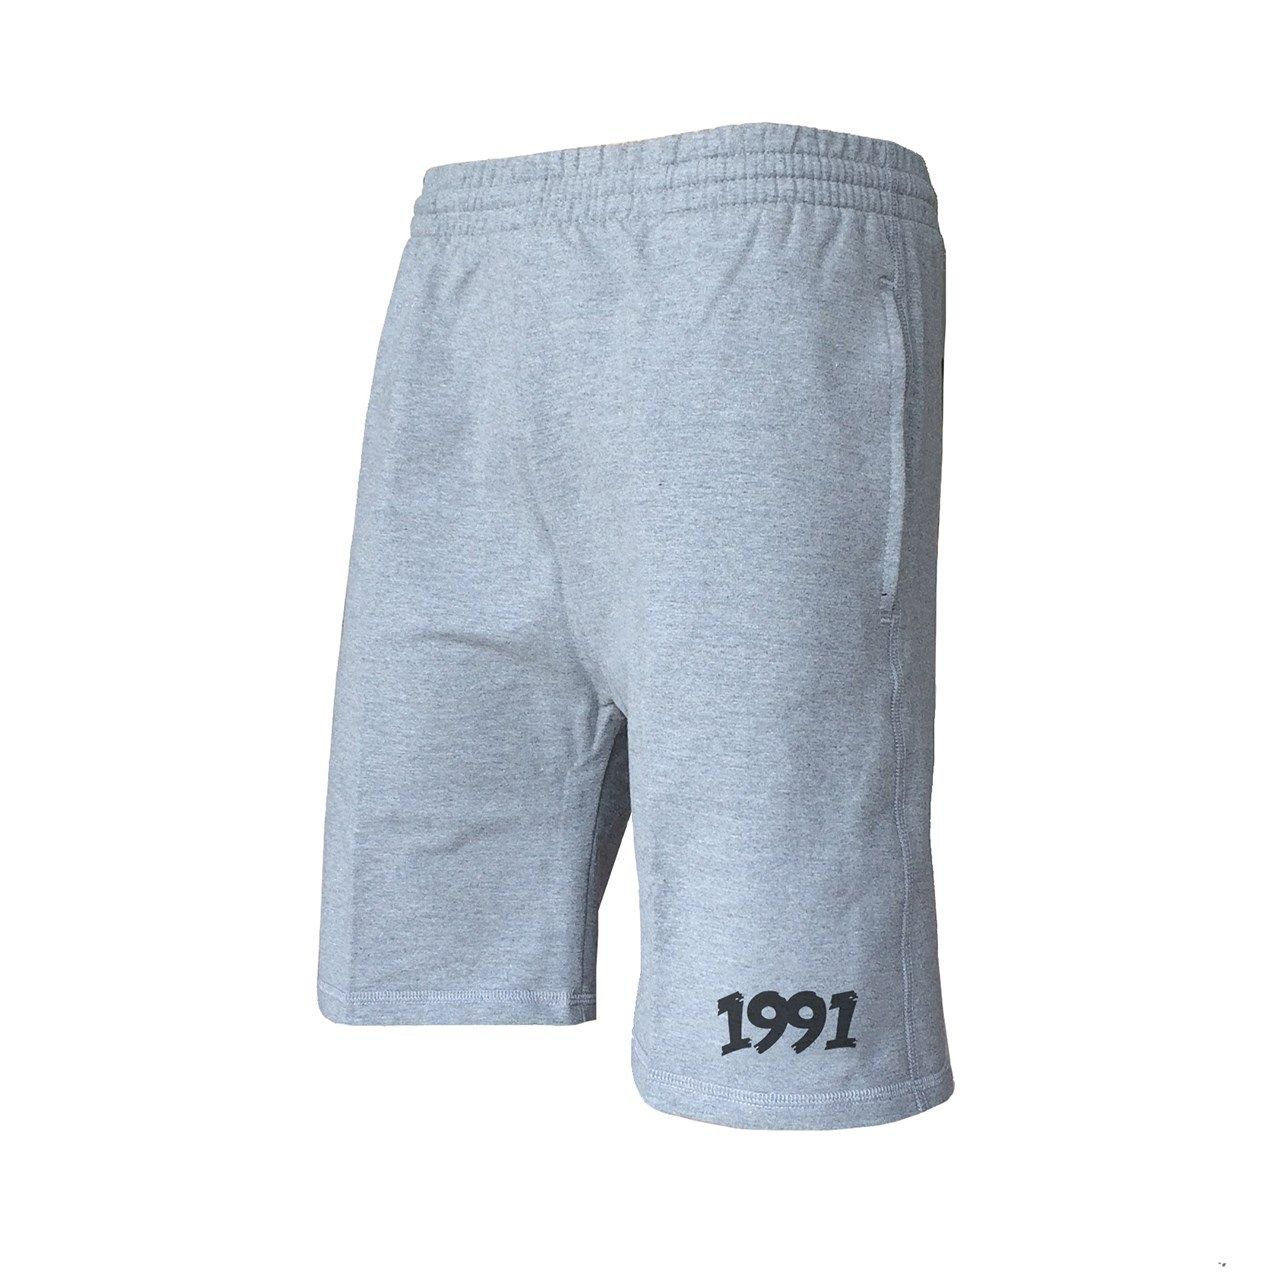 شلوارک ورزشی مردانه 1991 اس دبلیو مدل shorts Simplex Gray -  - 1